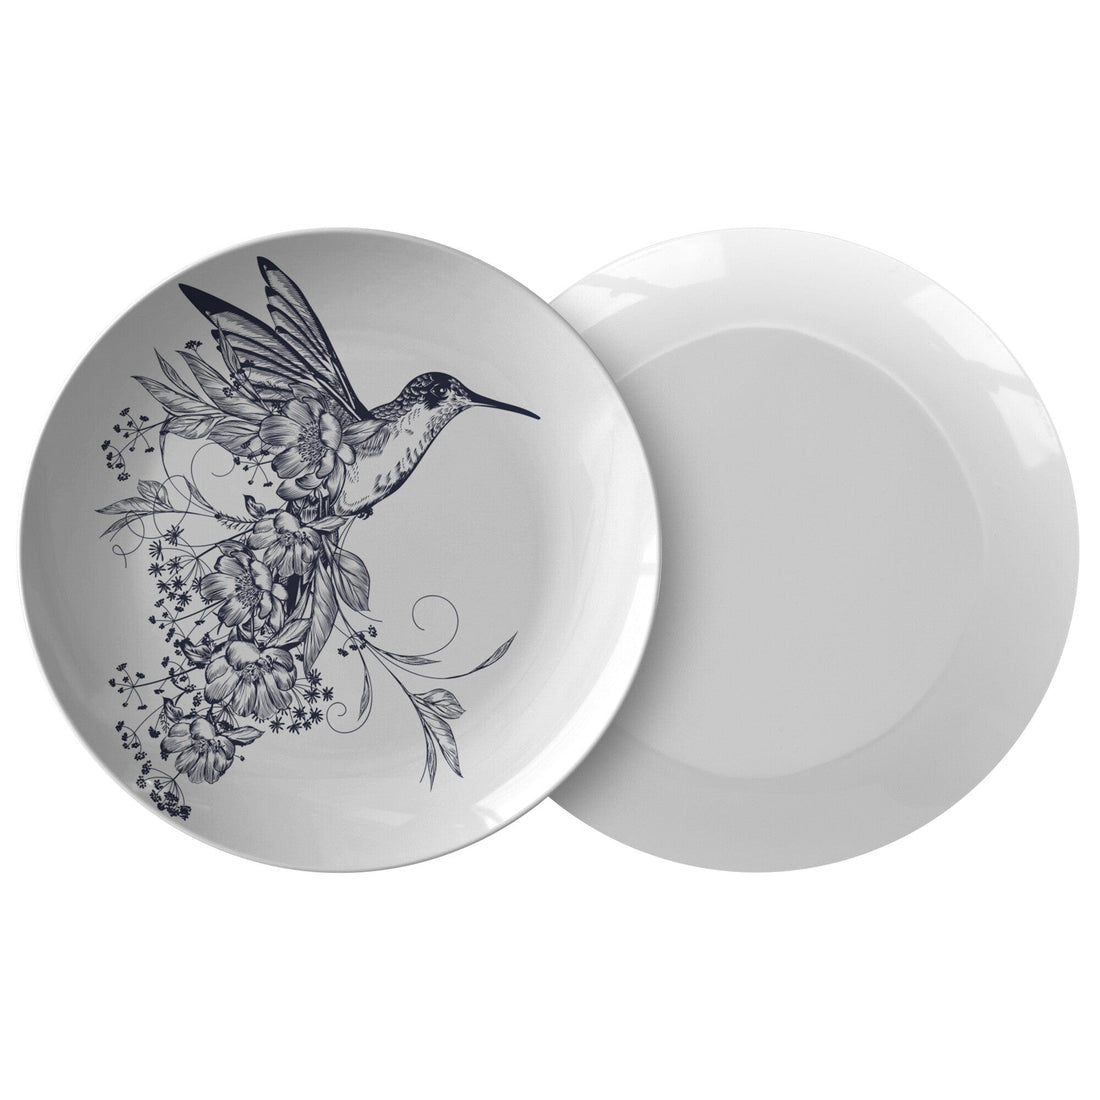 Kate McEnroe New York Hummingbird Dinnerware PlatesPlatesP20 - HUM - FLO - 82S